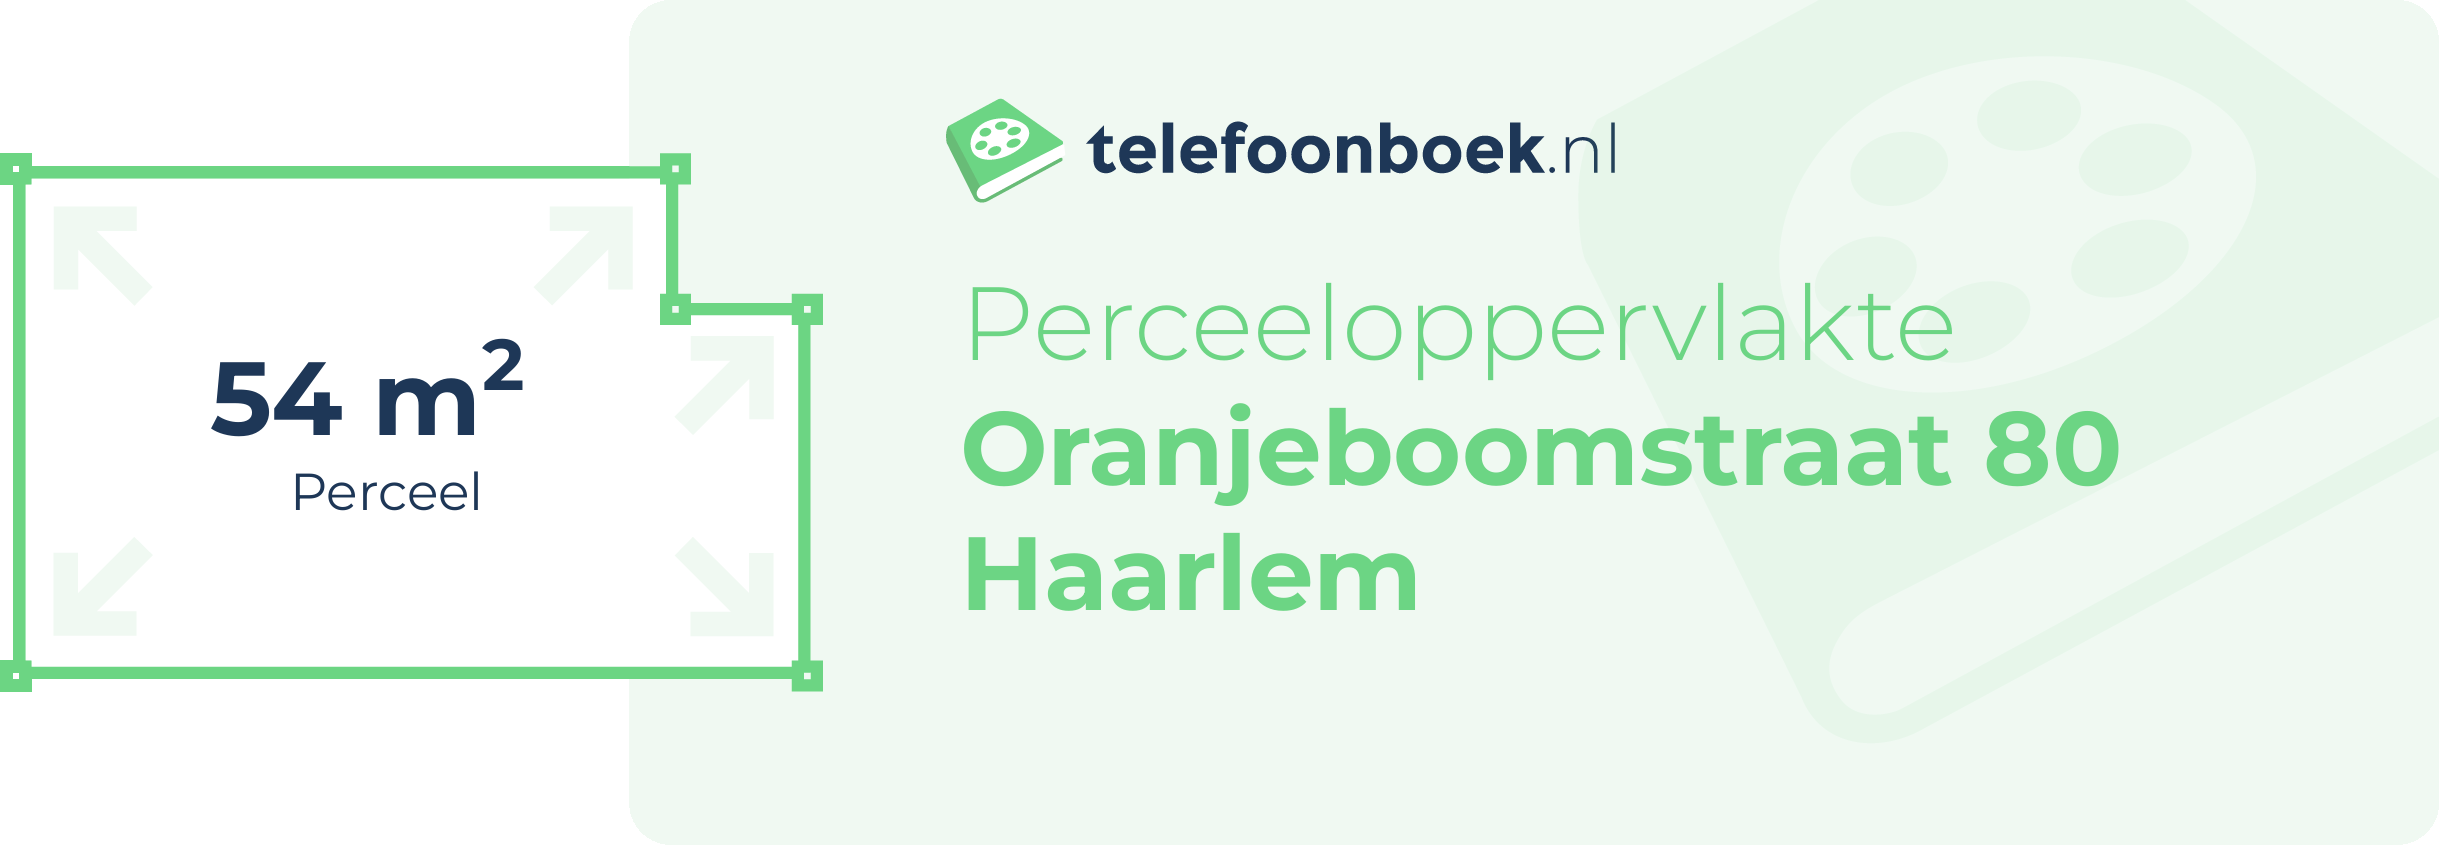 Perceeloppervlakte Oranjeboomstraat 80 Haarlem